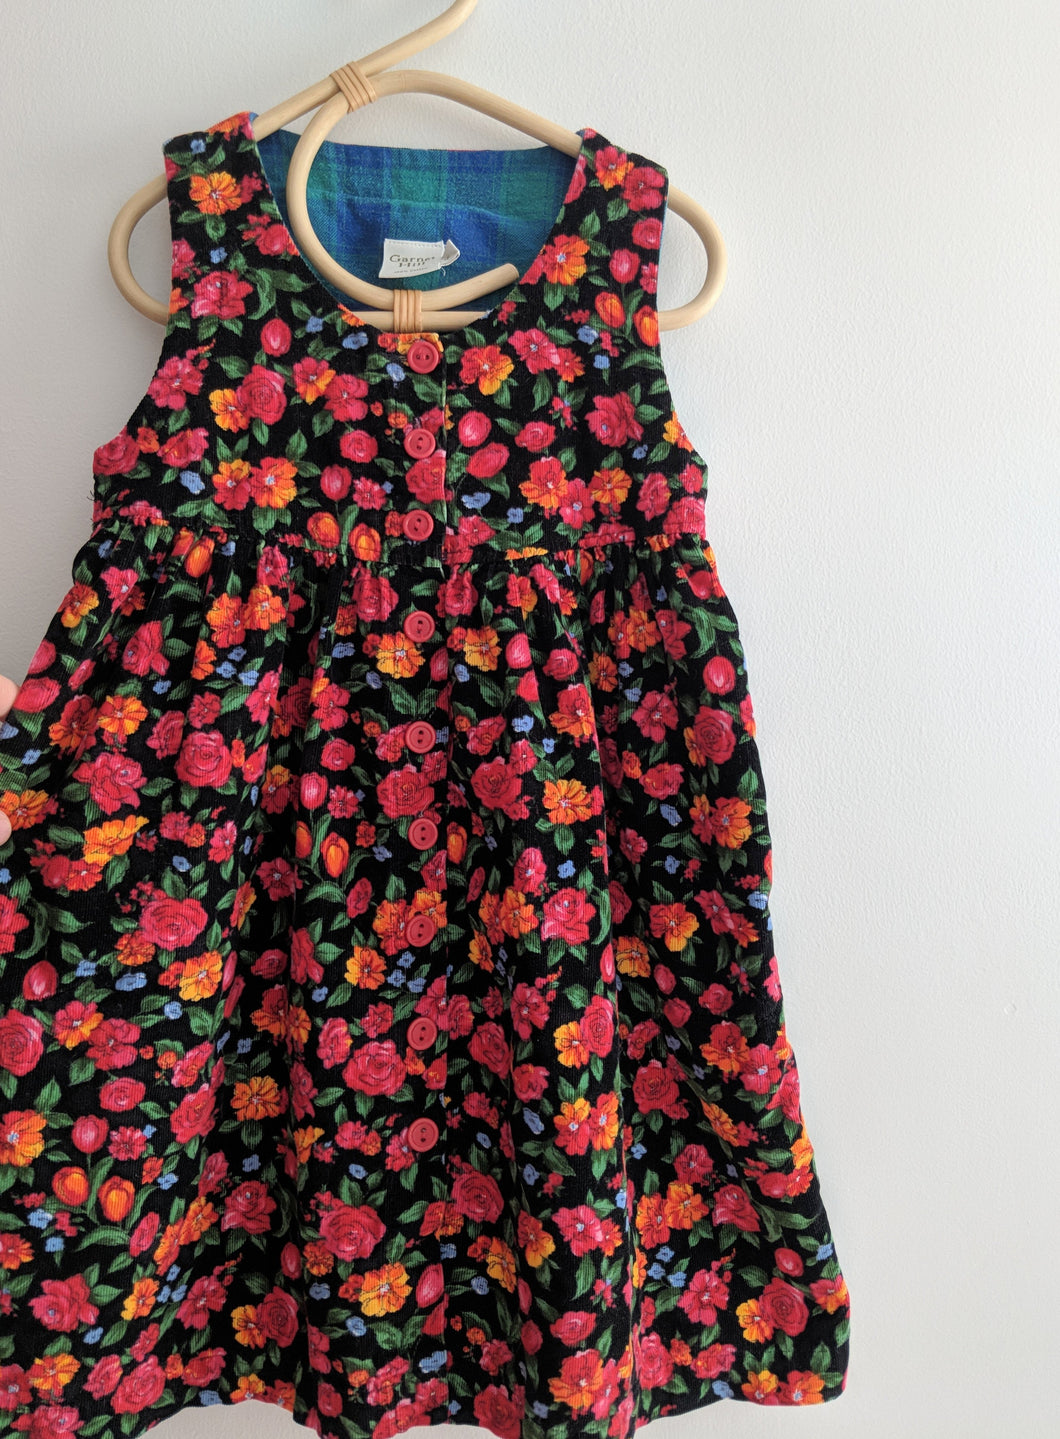 Garnet Hill Floral Cord Dress 4/5y